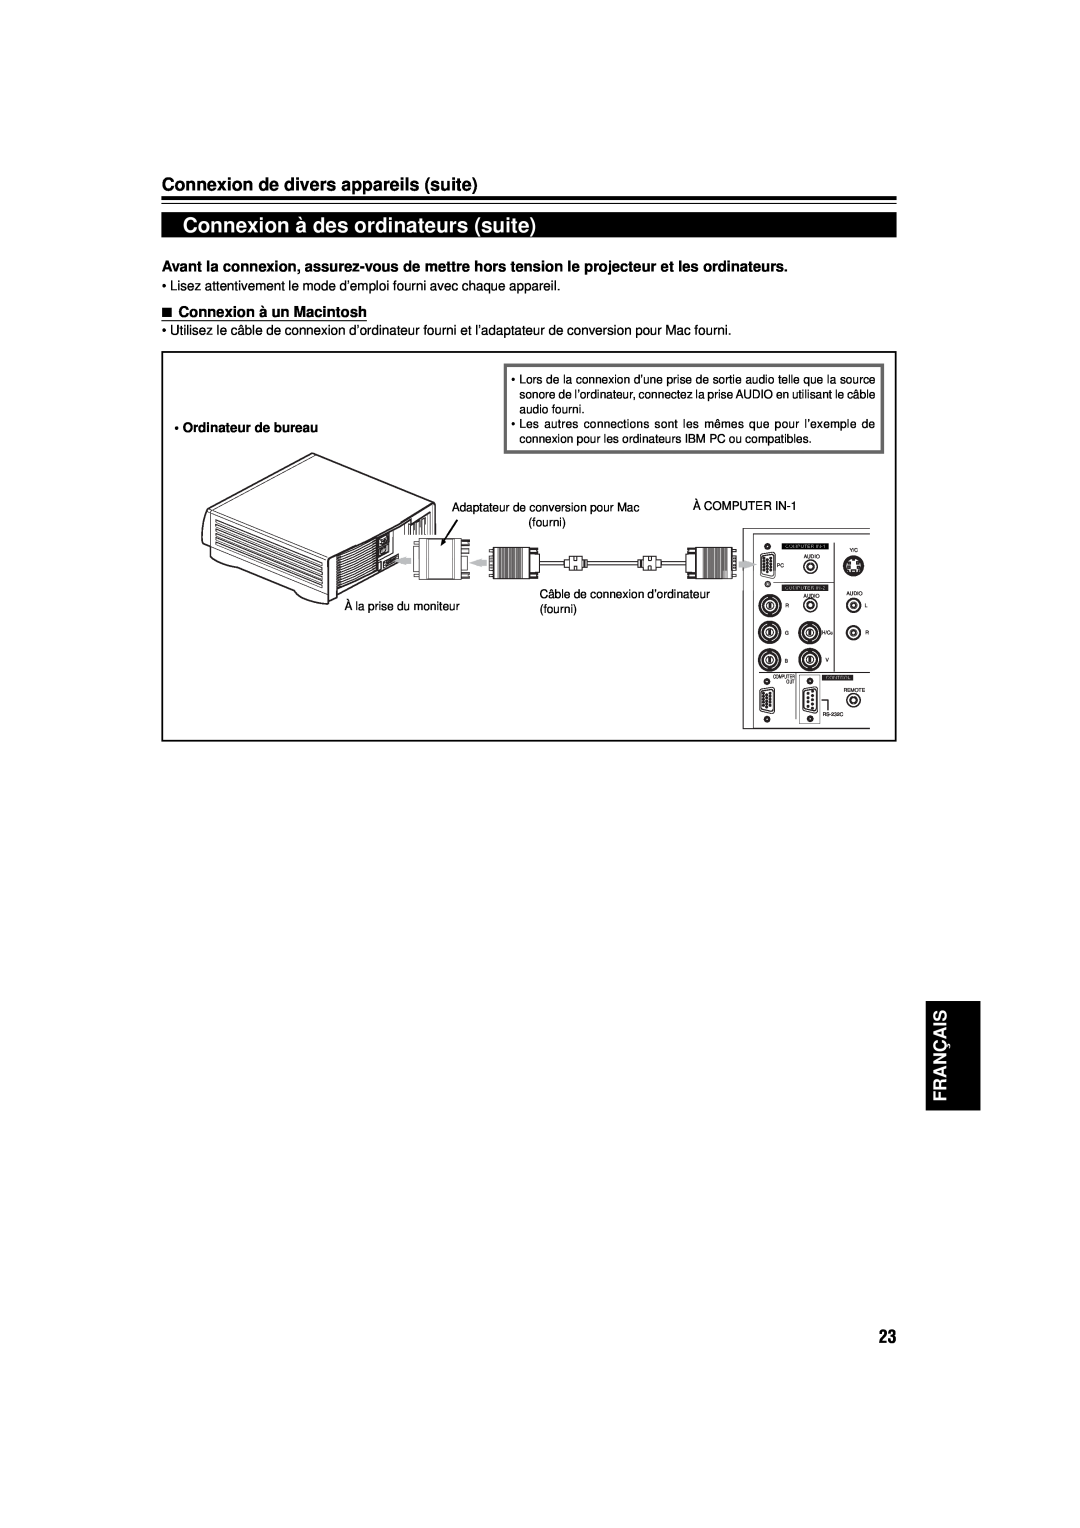 JVC DLA-M15U Connexion à des ordinateurs suite, Connexion de divers appareils suite, Français, Connexion à un Macintosh 